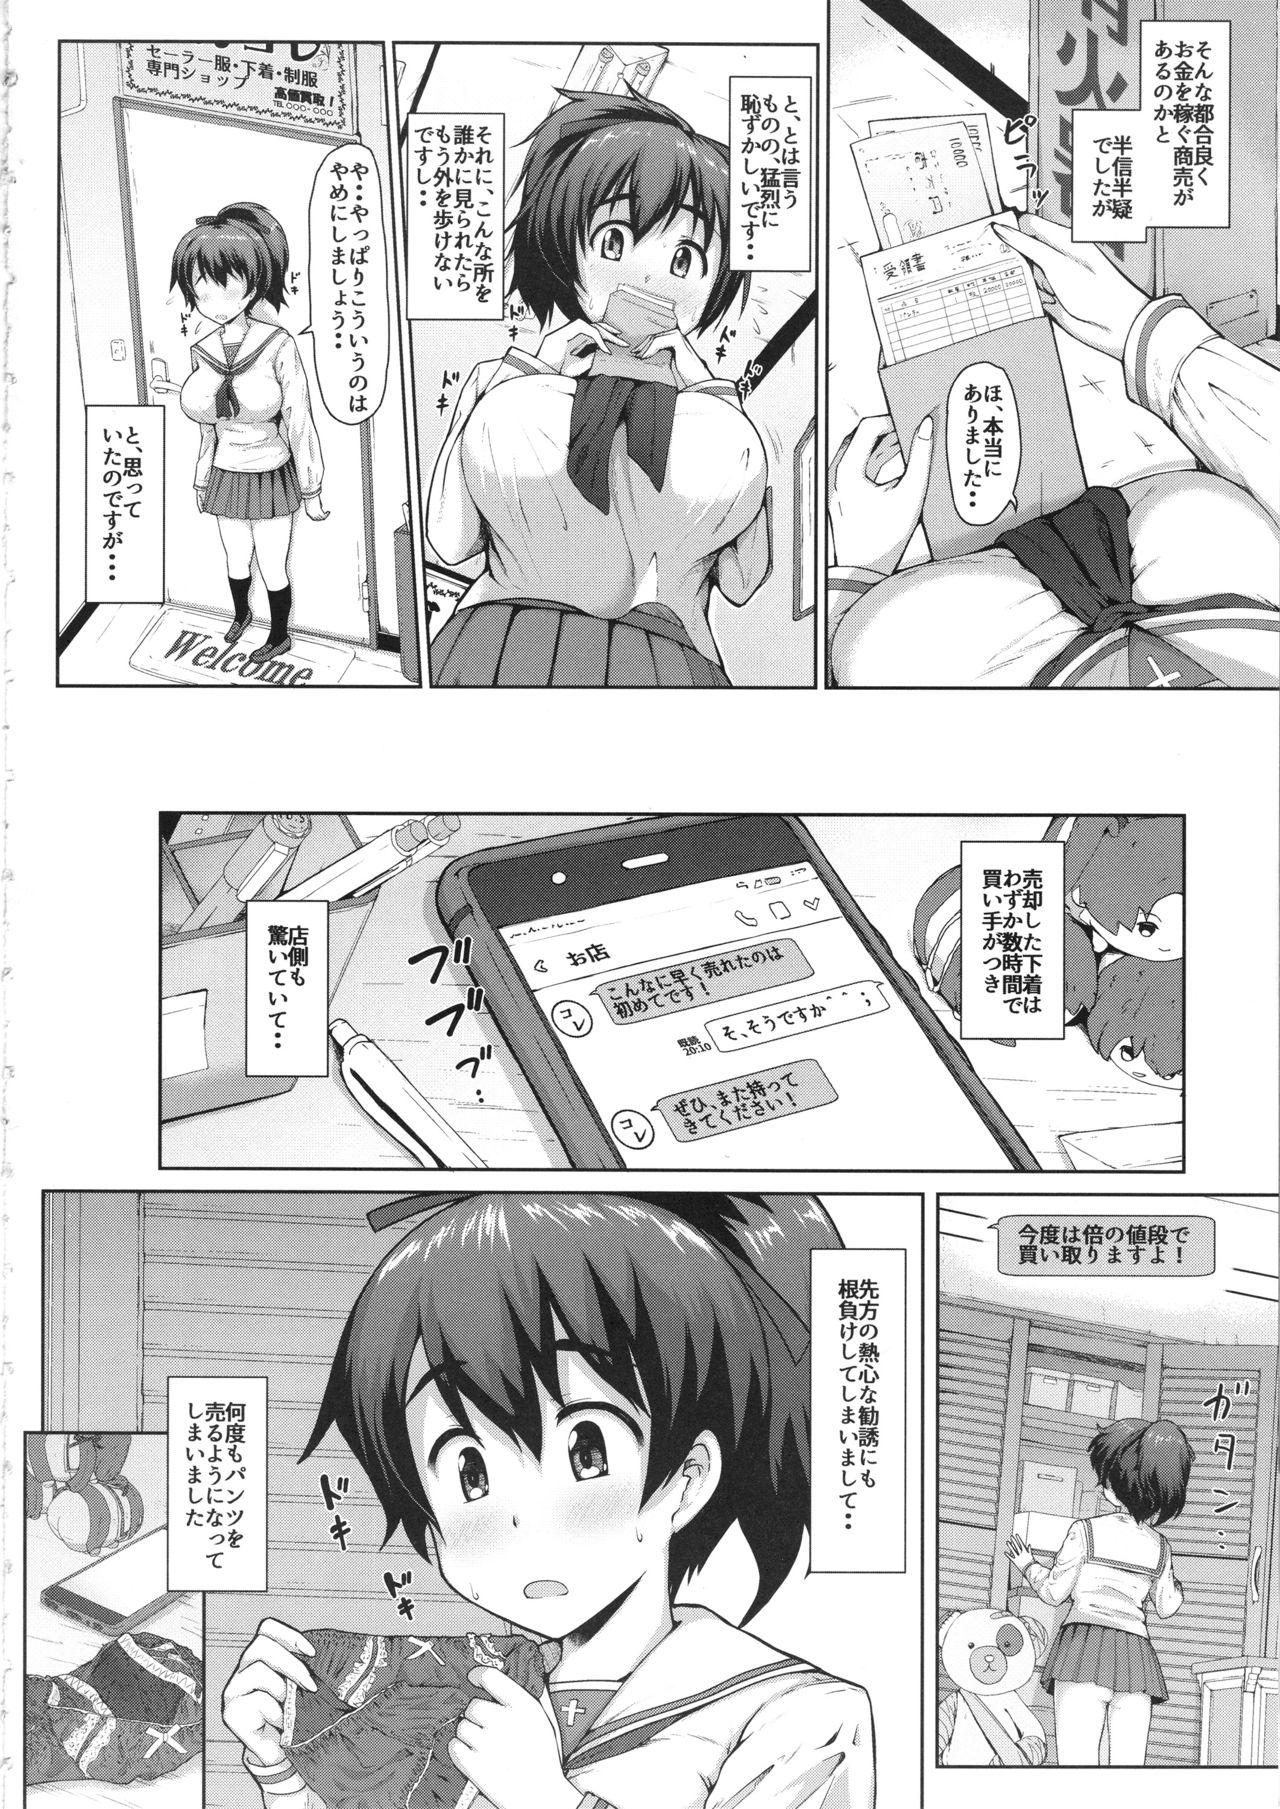 Scandal Yuzu-chan no Renkinjutsu - Girls und panzer Spying - Page 3